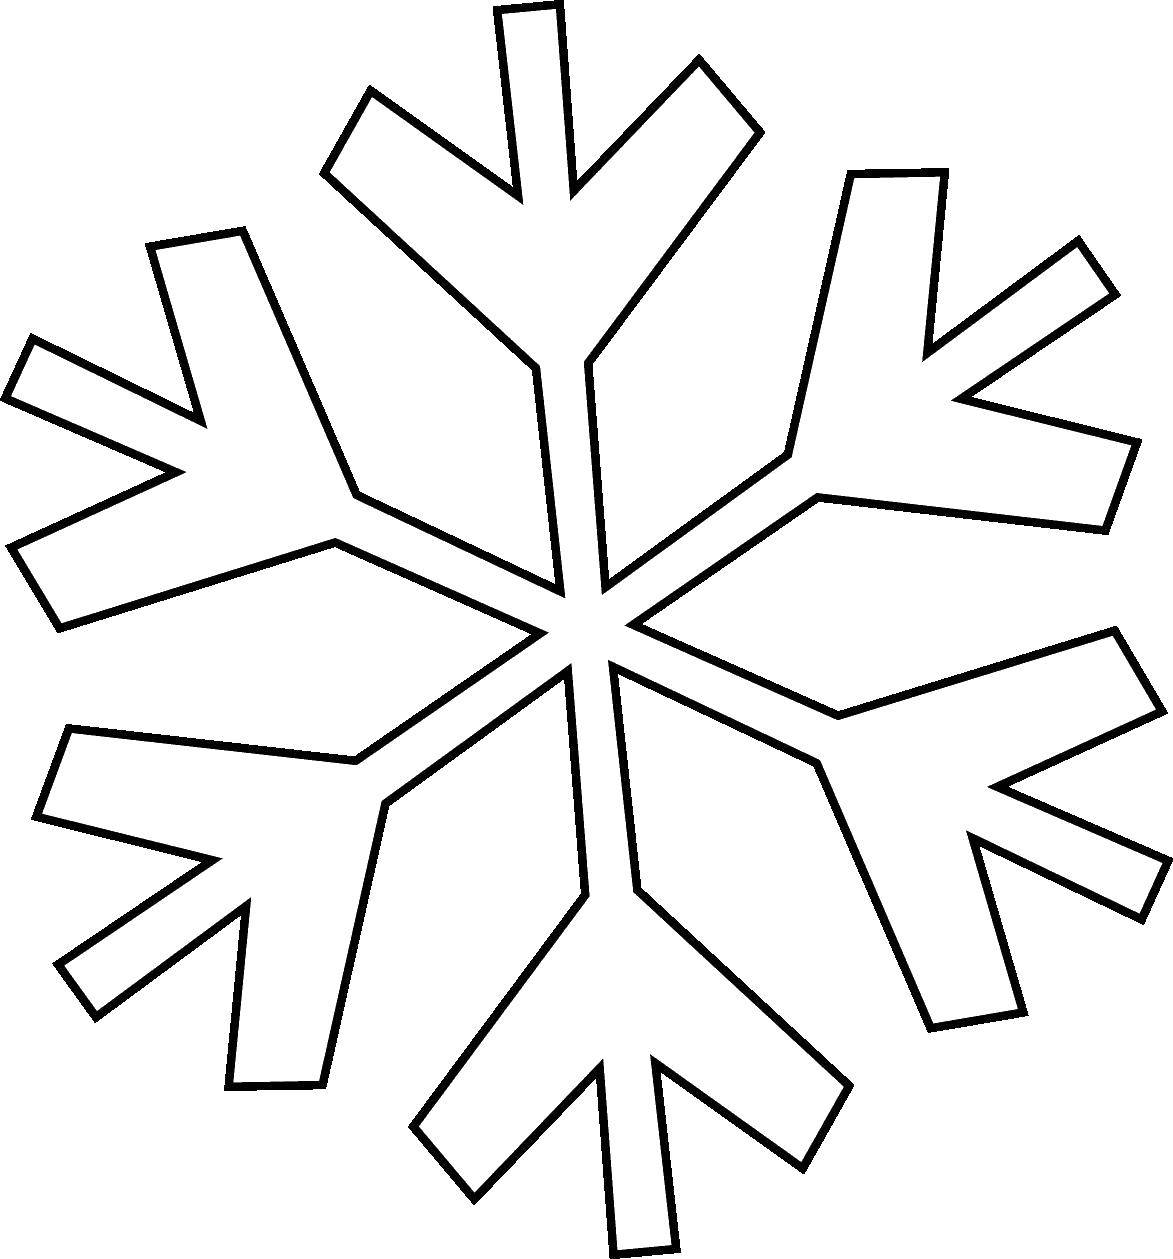 Название: Раскраска Снежинка. Категория: Контур снежинки. Теги: снежинка.